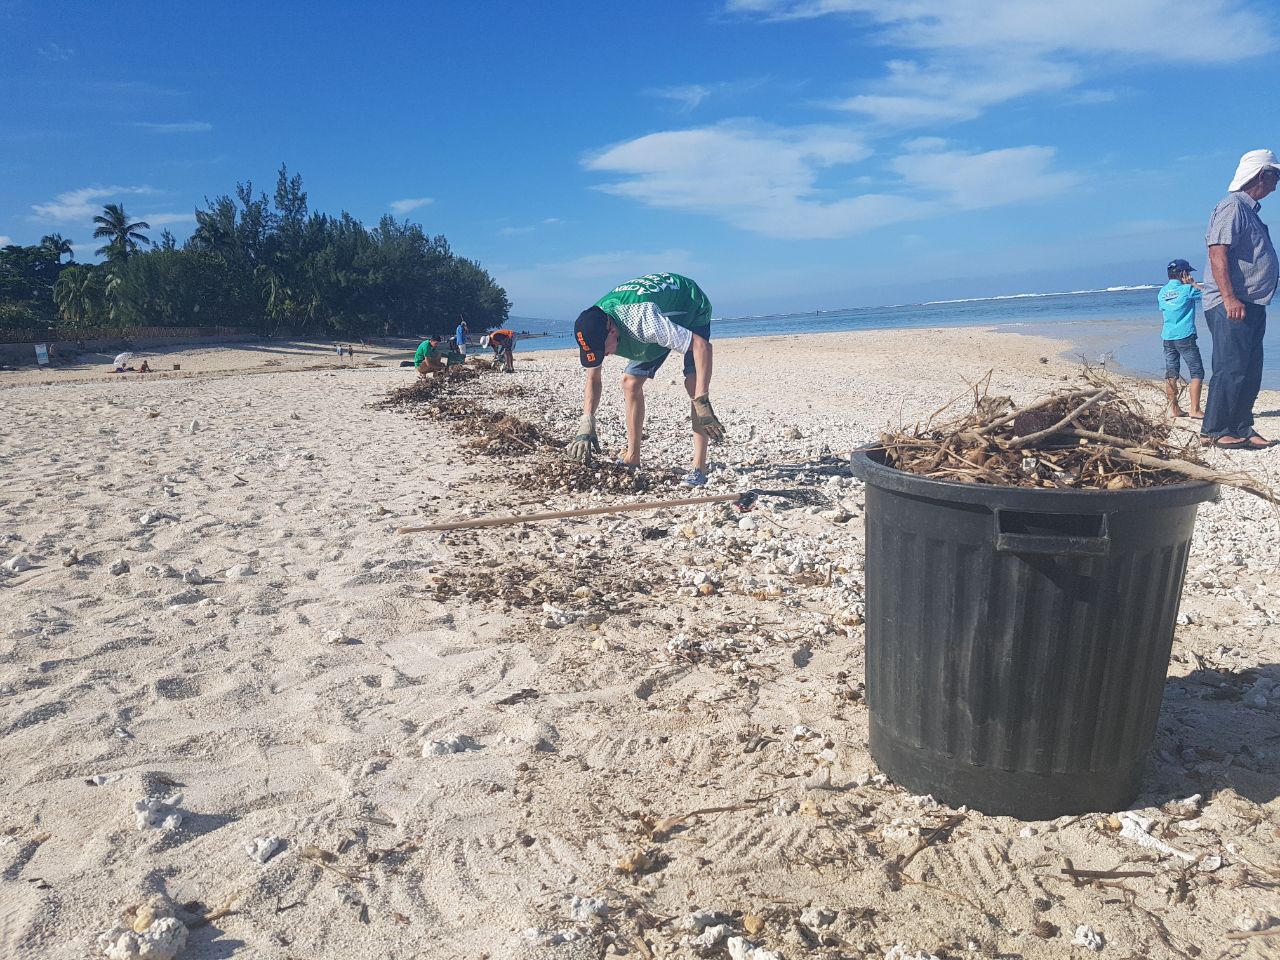 Les déchets envahissent la plage, le collectif DPM souhaite sensibiliser pour éviter le danger